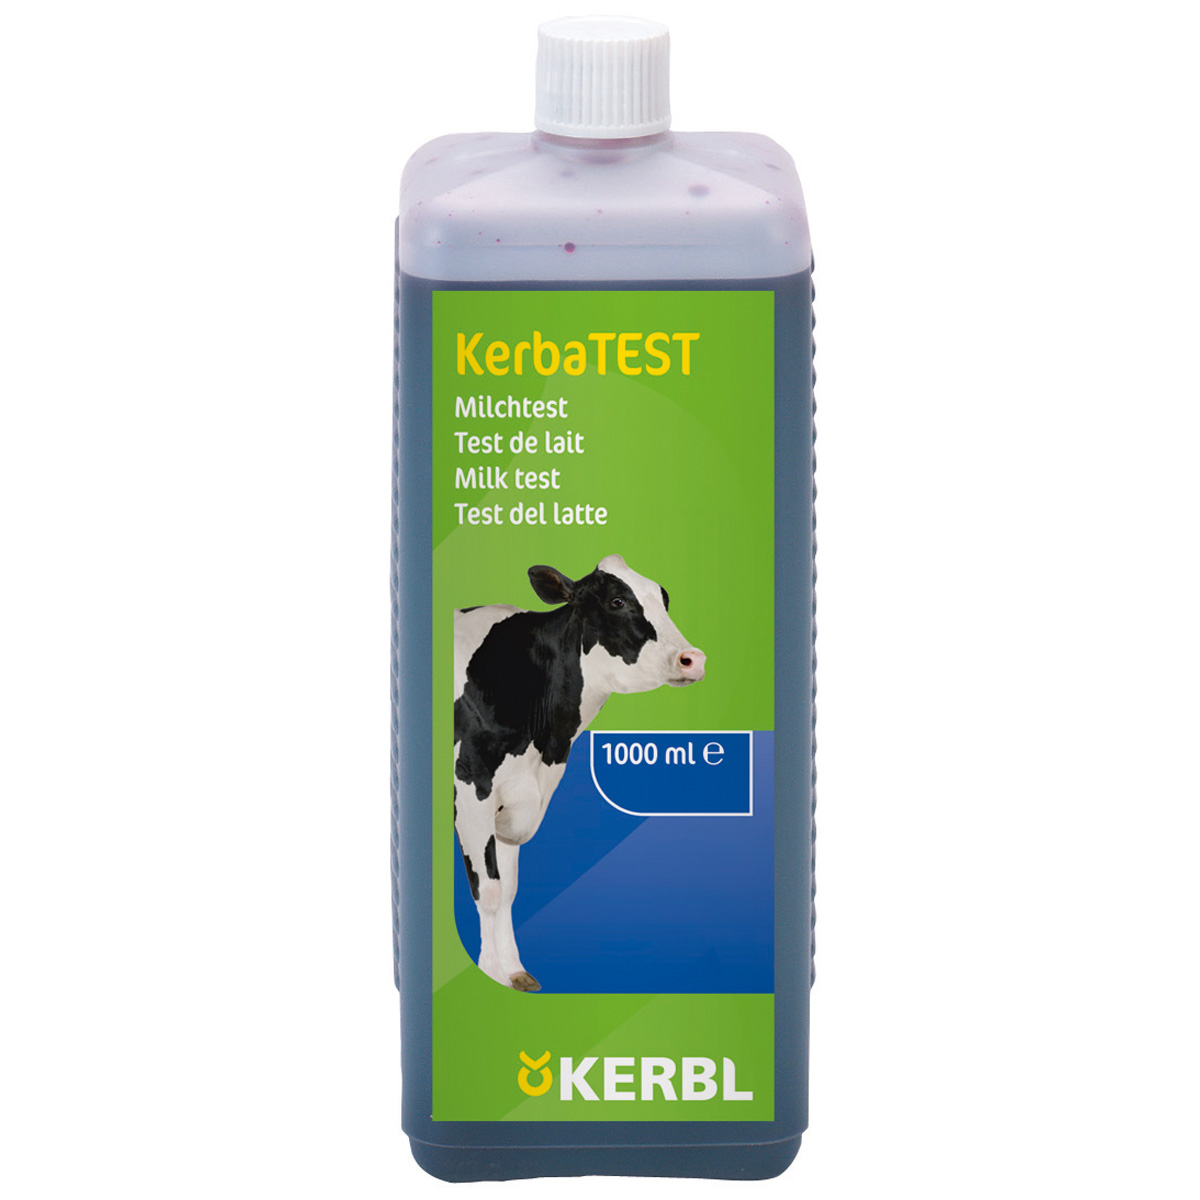 Kerbl Test de lait KerbaTEST 1 litre